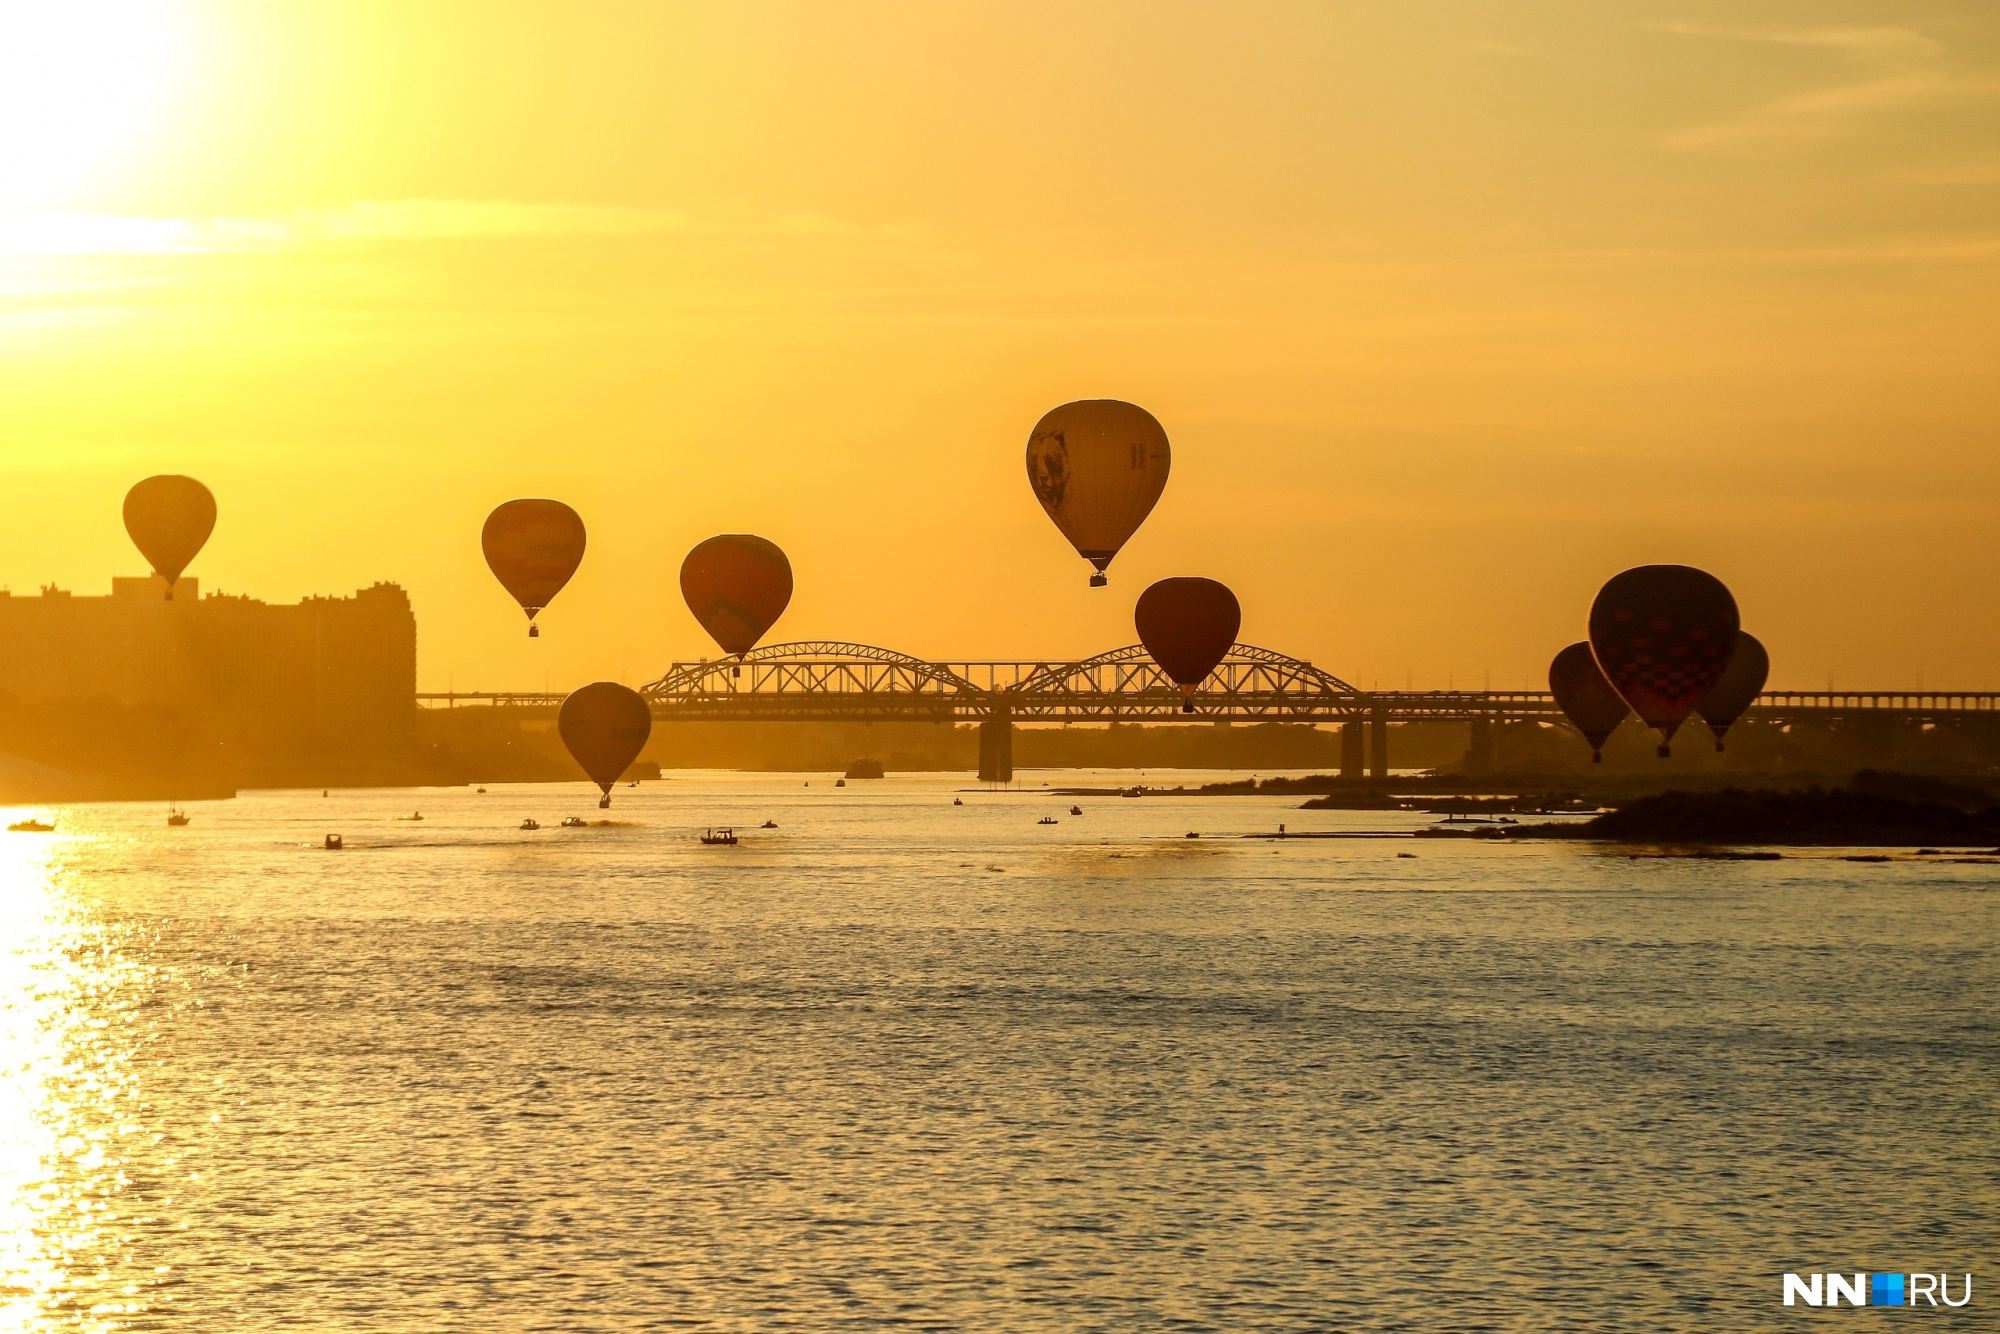 На большом воздушном шаре: смотрим, как прошел первый день фестиваля аэростатов в Нижнем Новгороде